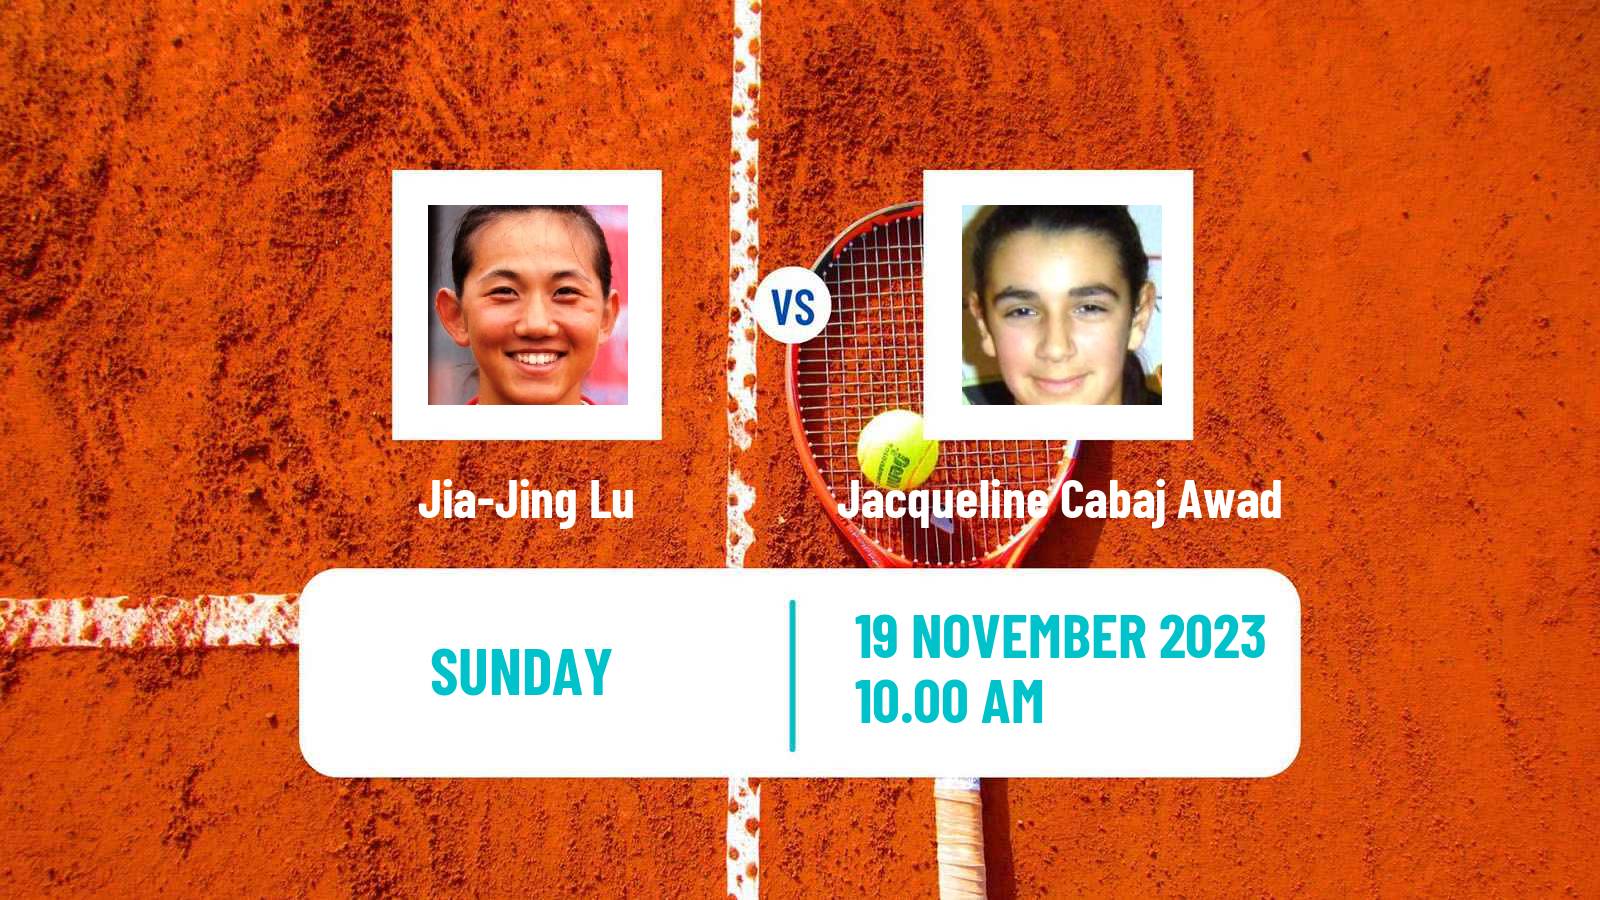 Tennis ITF W25 Santo Domingo 6 Women Jia-Jing Lu - Jacqueline Cabaj Awad